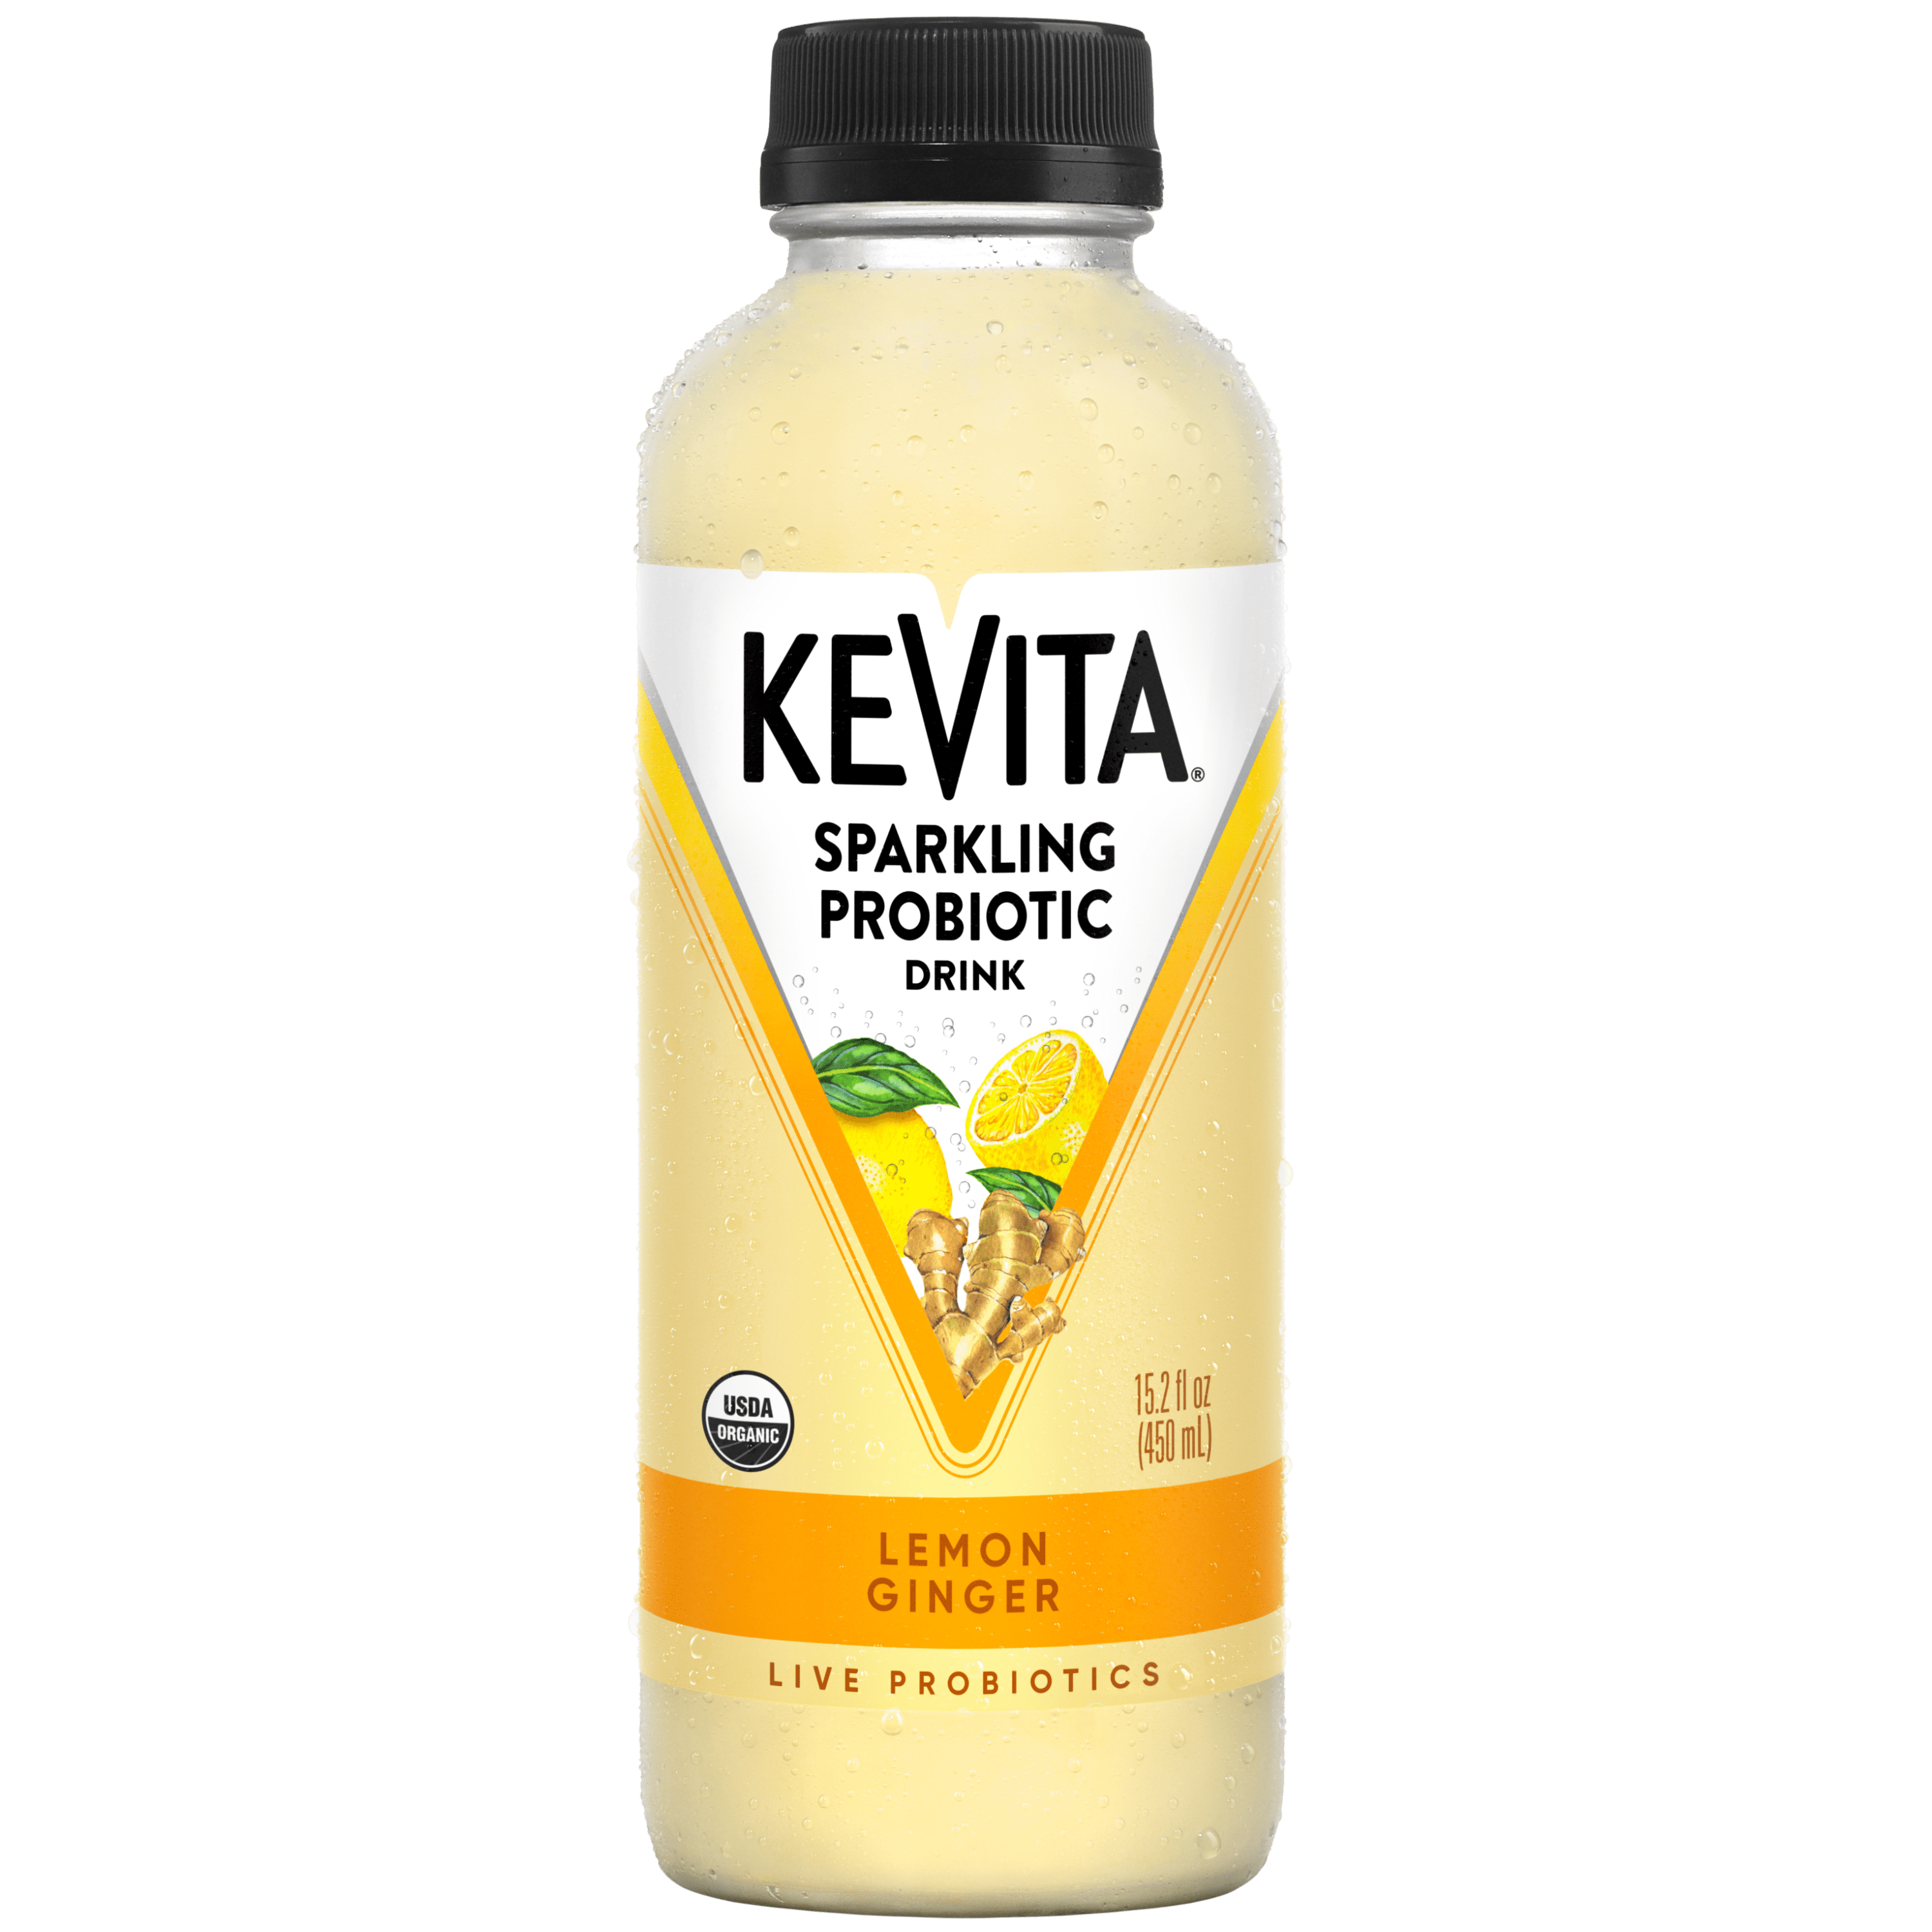 Kevita Sparkling Probiotic Drink Lemon Ginger 15.2 Fl Oz.